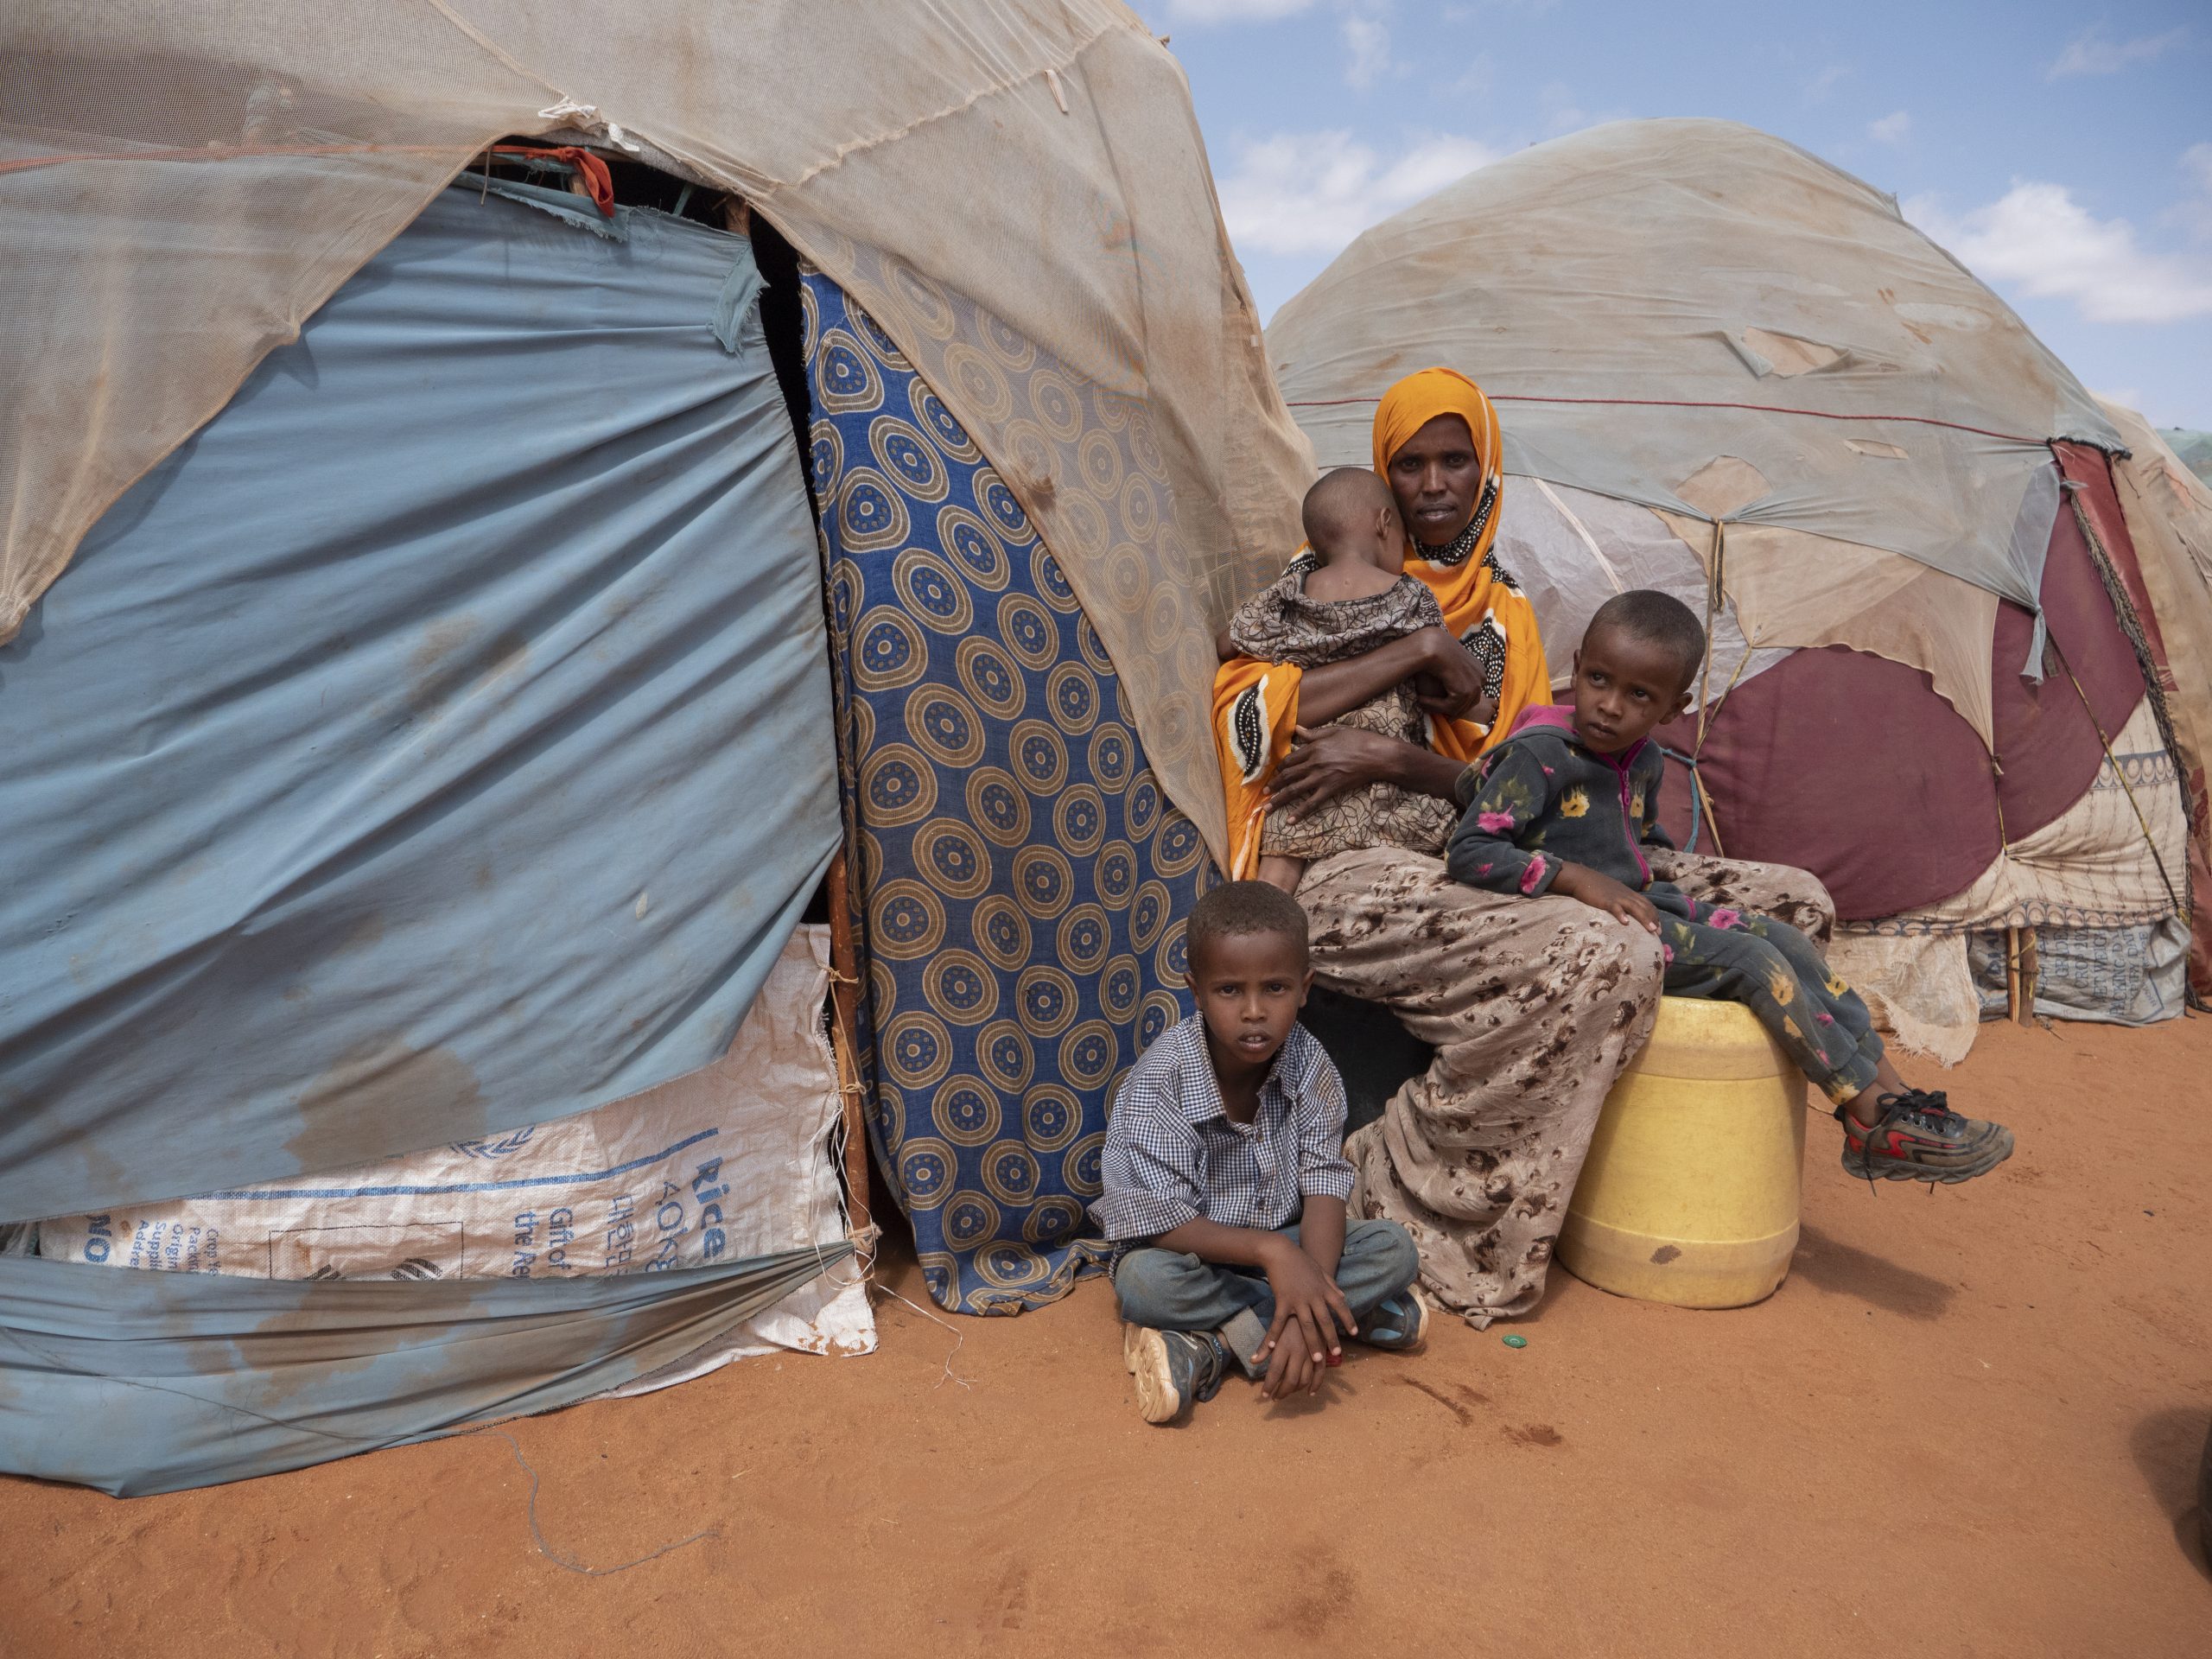 Fathi Mohamed Ali, desplazada interna somalí de 35 años, junto a sus hijos. La sequía y la situación política en su país la obligaron a huir y trasladarse al campamento de refugiados de Kabasa, en Dolow, Somalía.